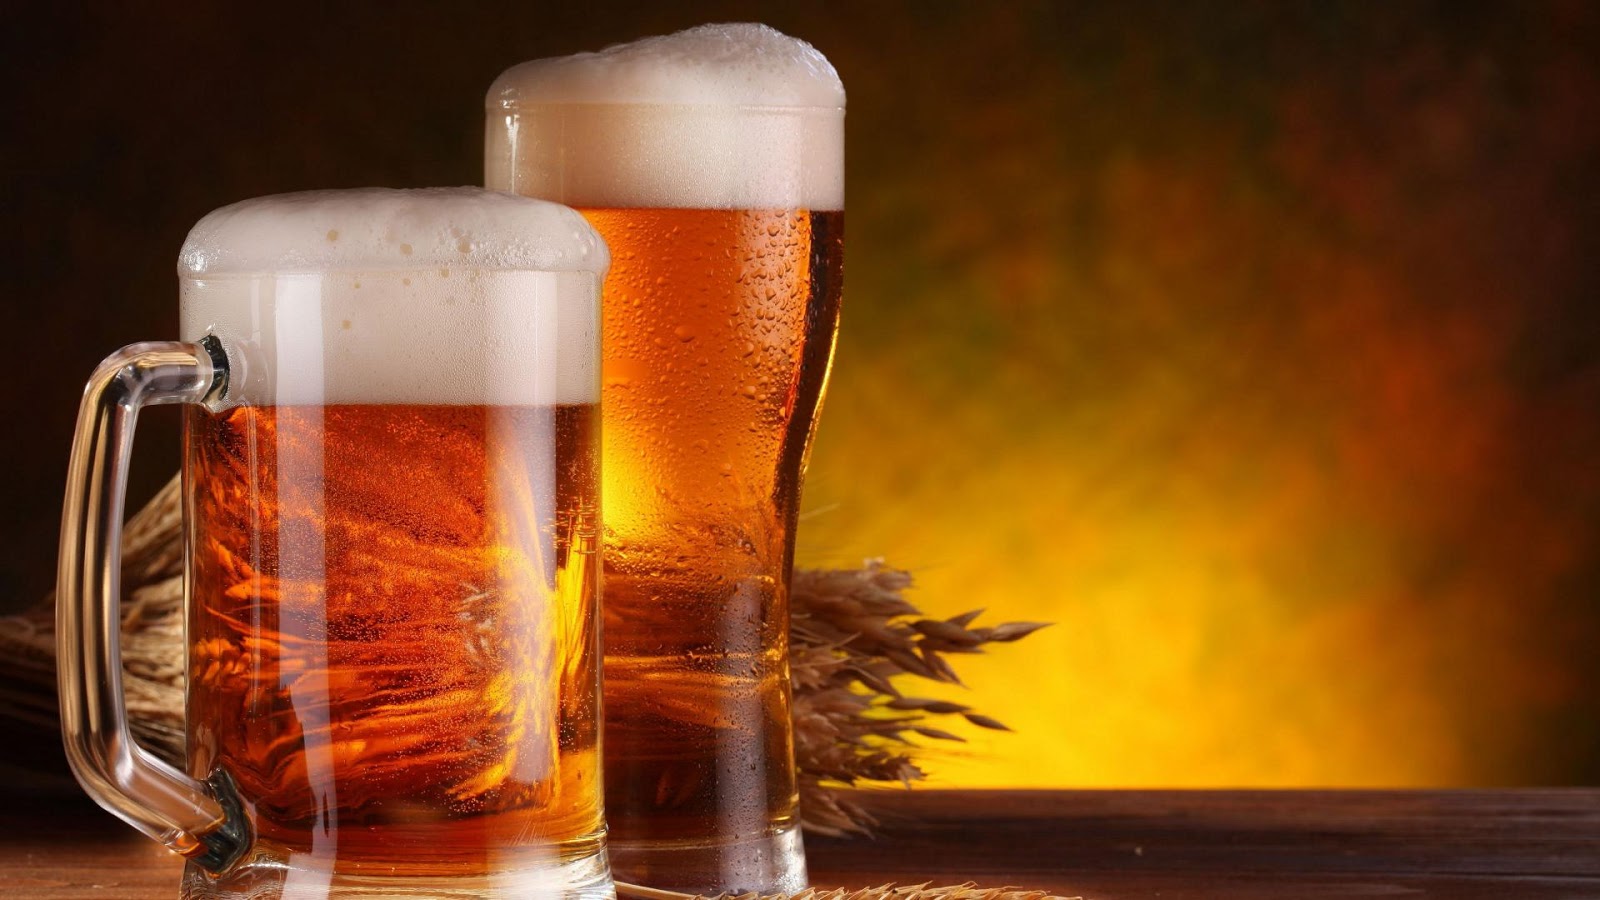 Μέτρια ποσότητα μπύρας μειώνει τον κίνδυνο εγκεφαλικών